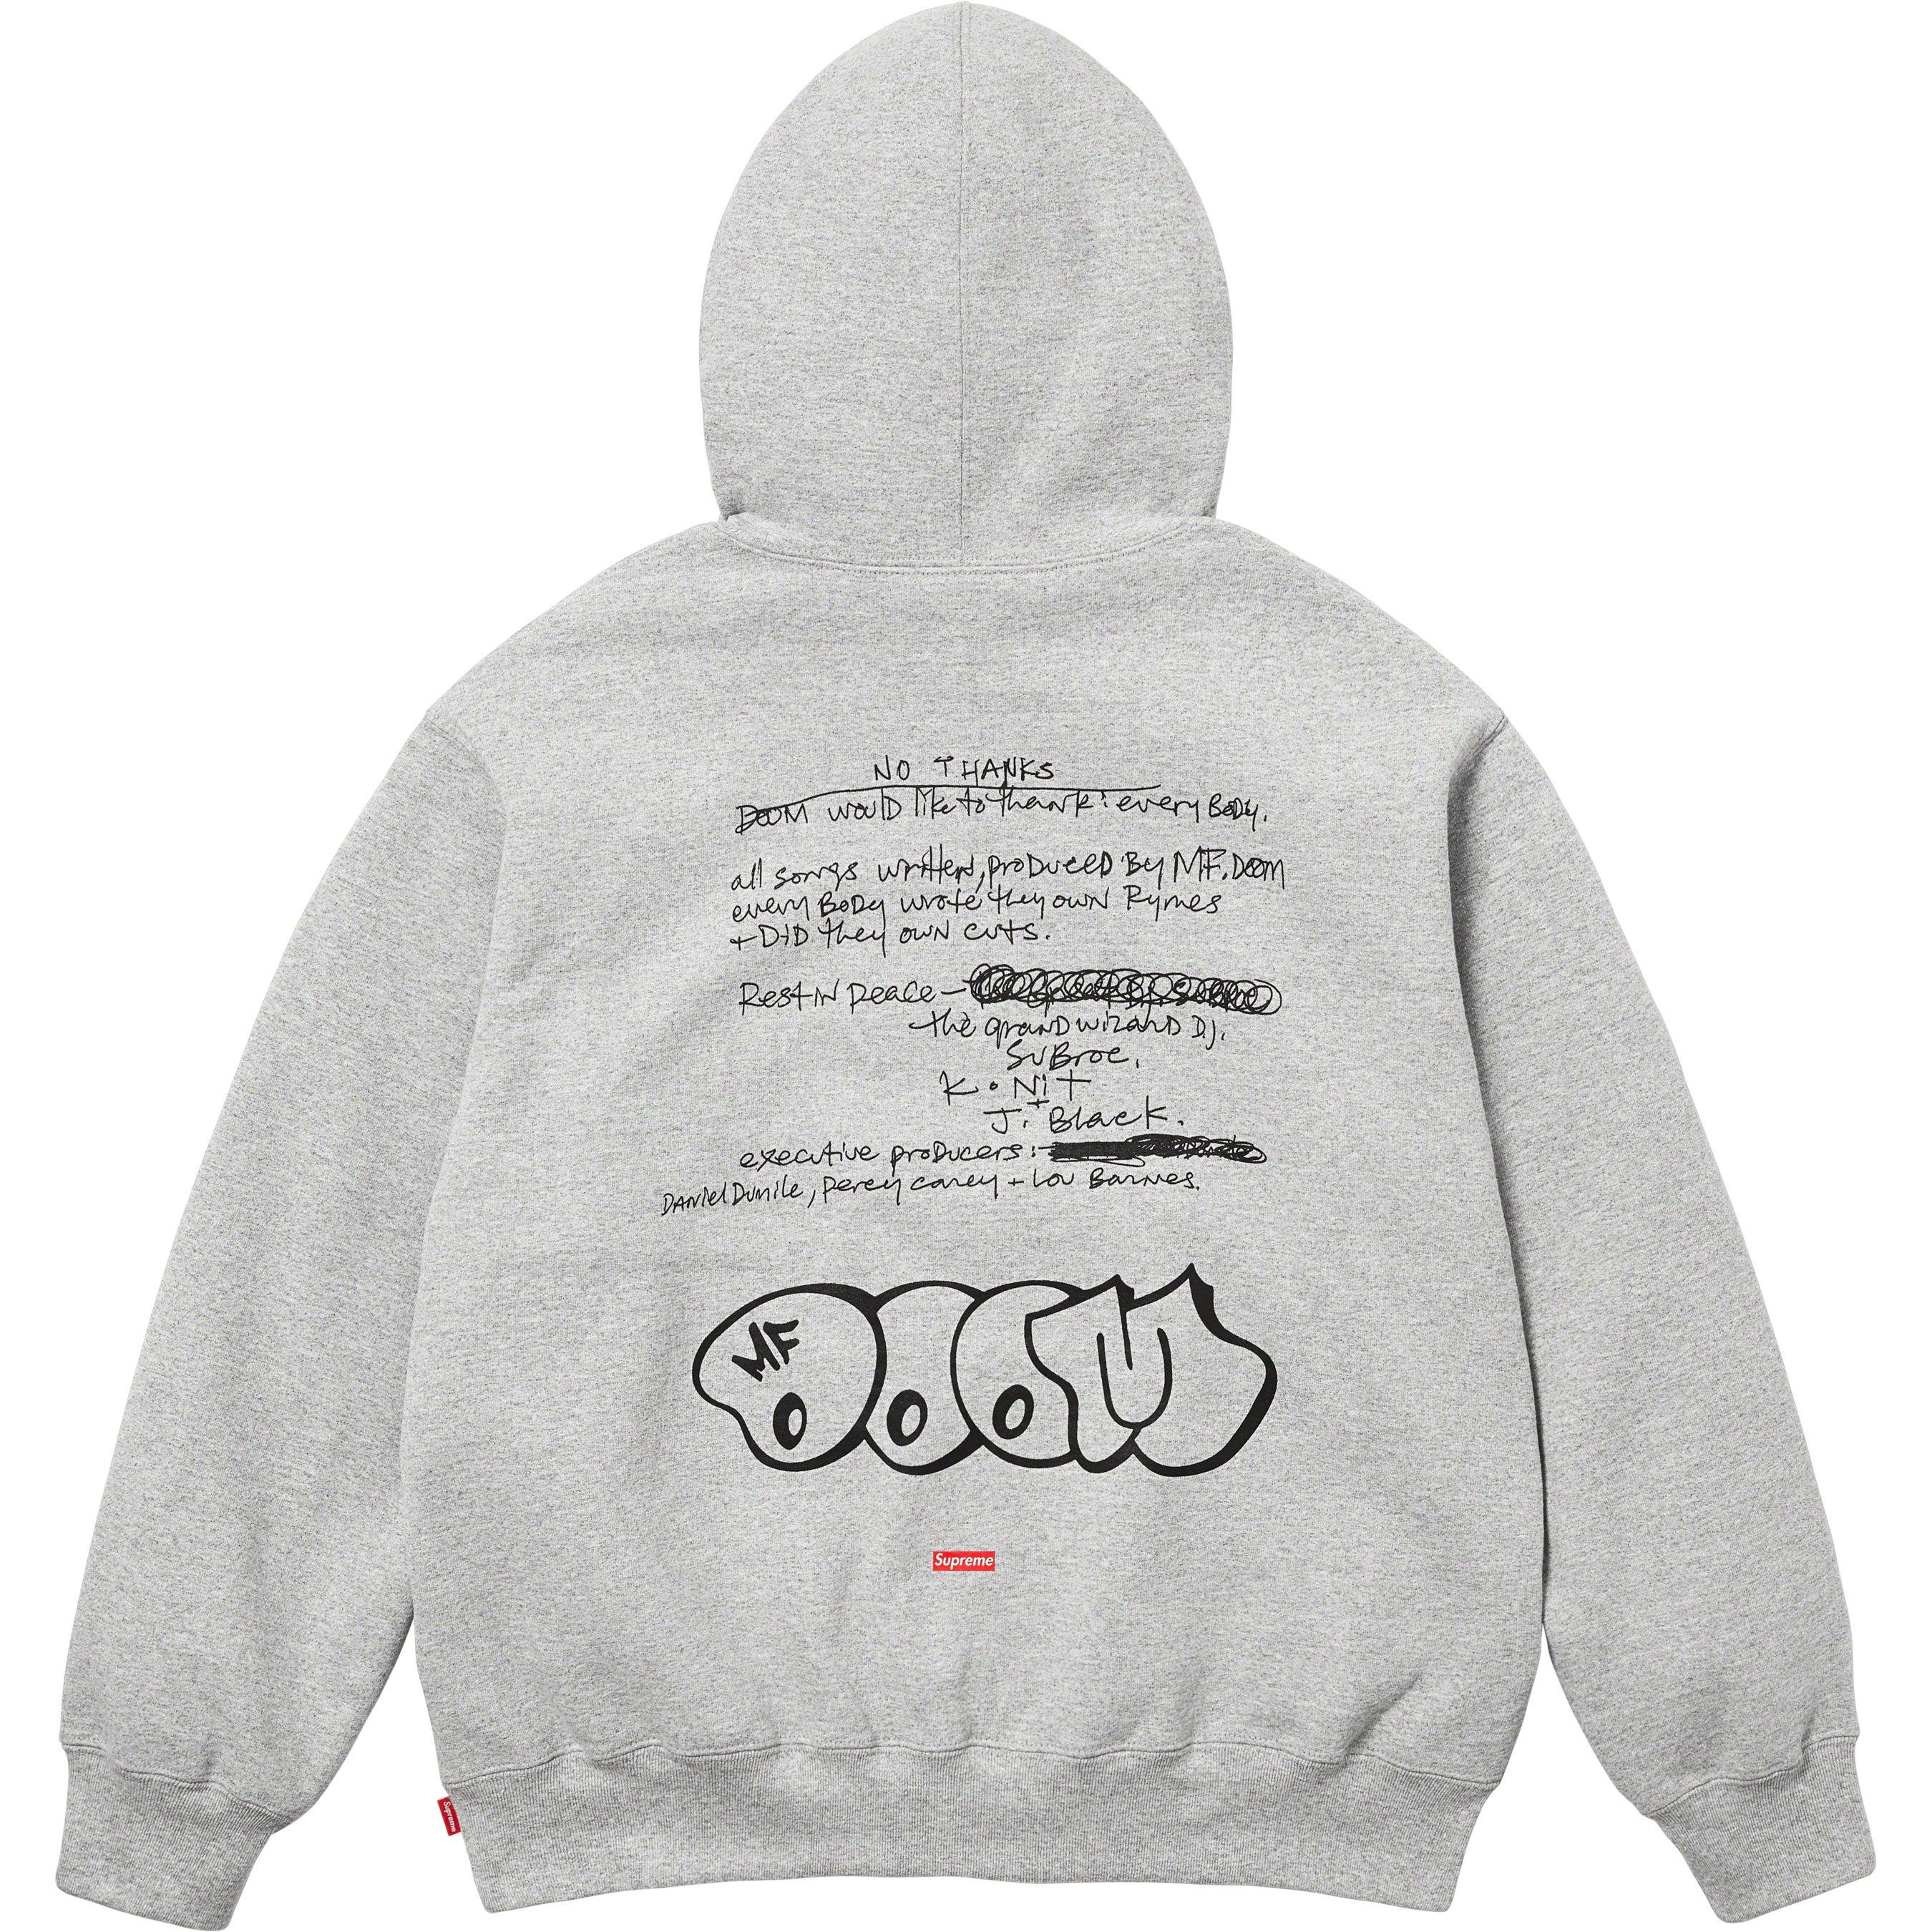 25833円 人気 通販 Supreme Mf Doom Hooded Sweatshirt パーカー ...